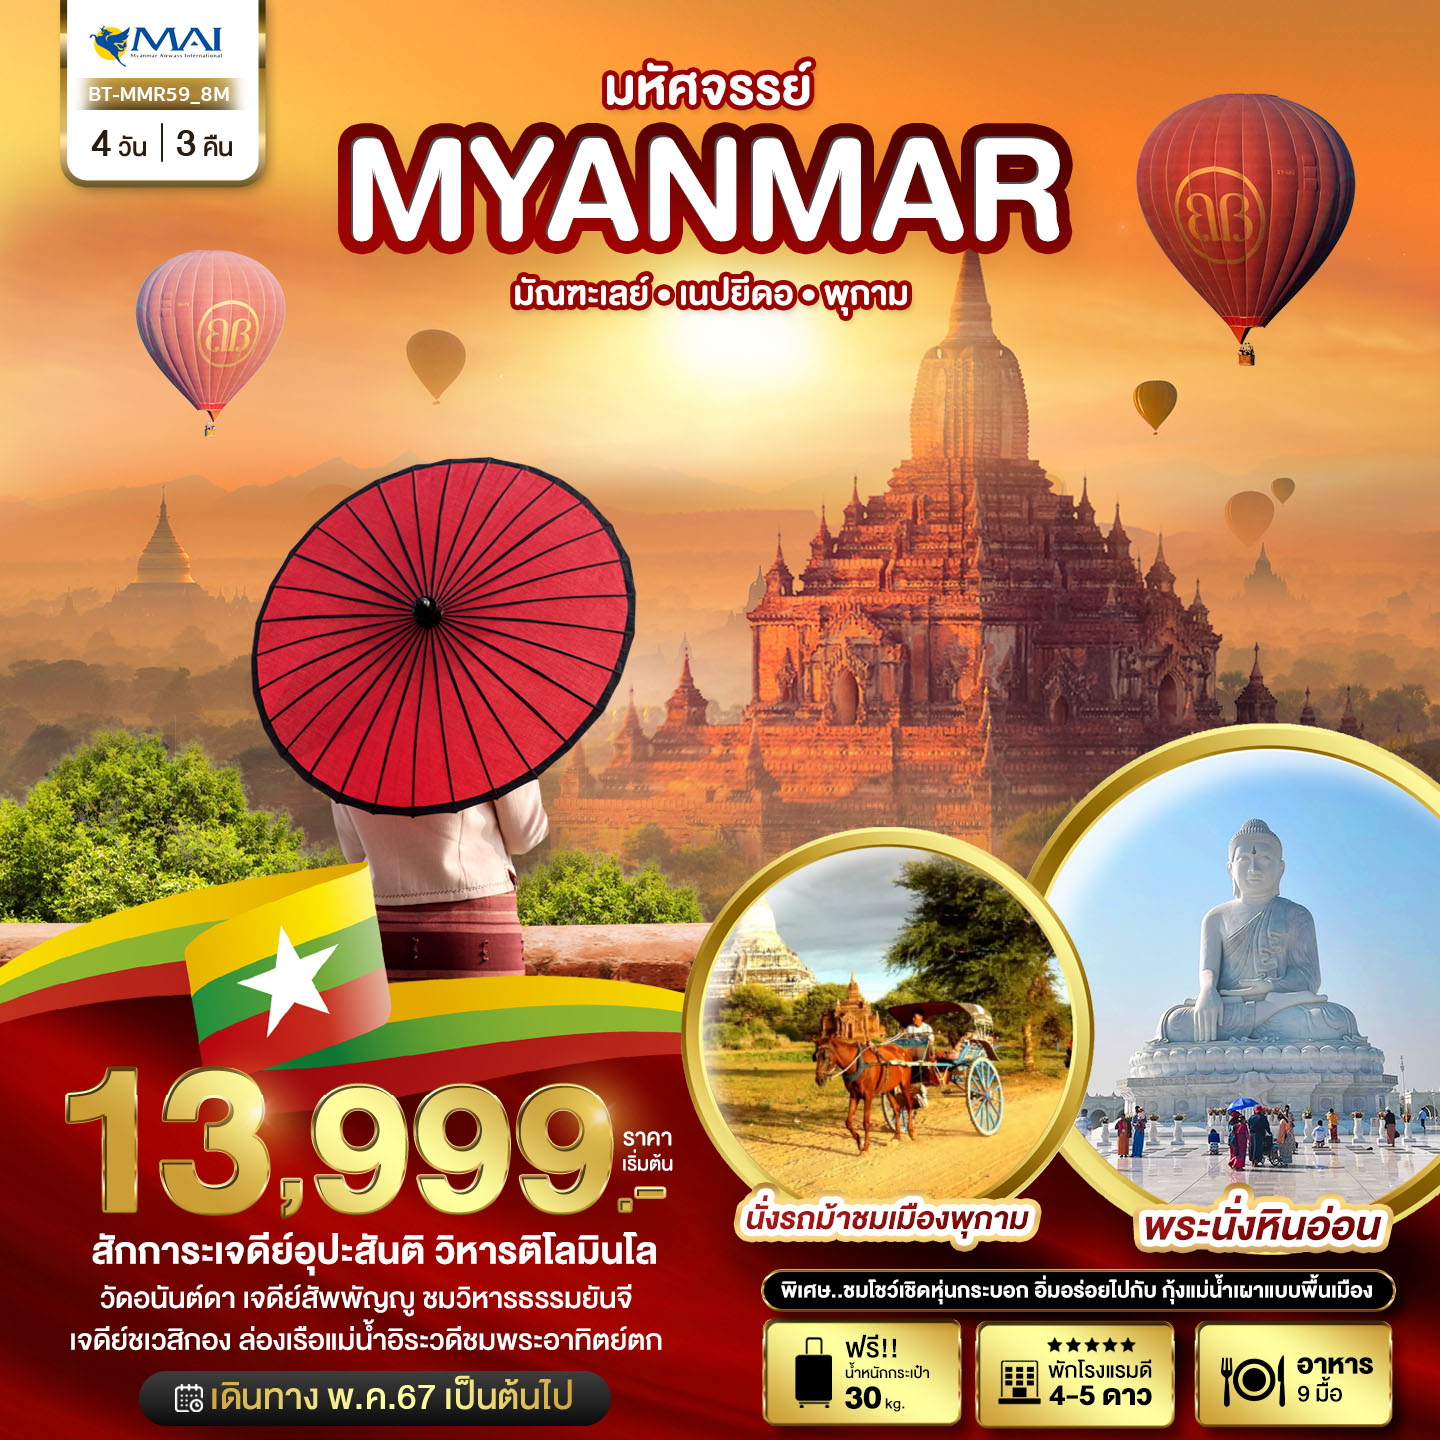 มหัศจรรย์ MYANMAR มัณฑะเลย์ เนปยีดอ พุกาม 4วัน 3คืน by MYANMAR AIRWAYS 